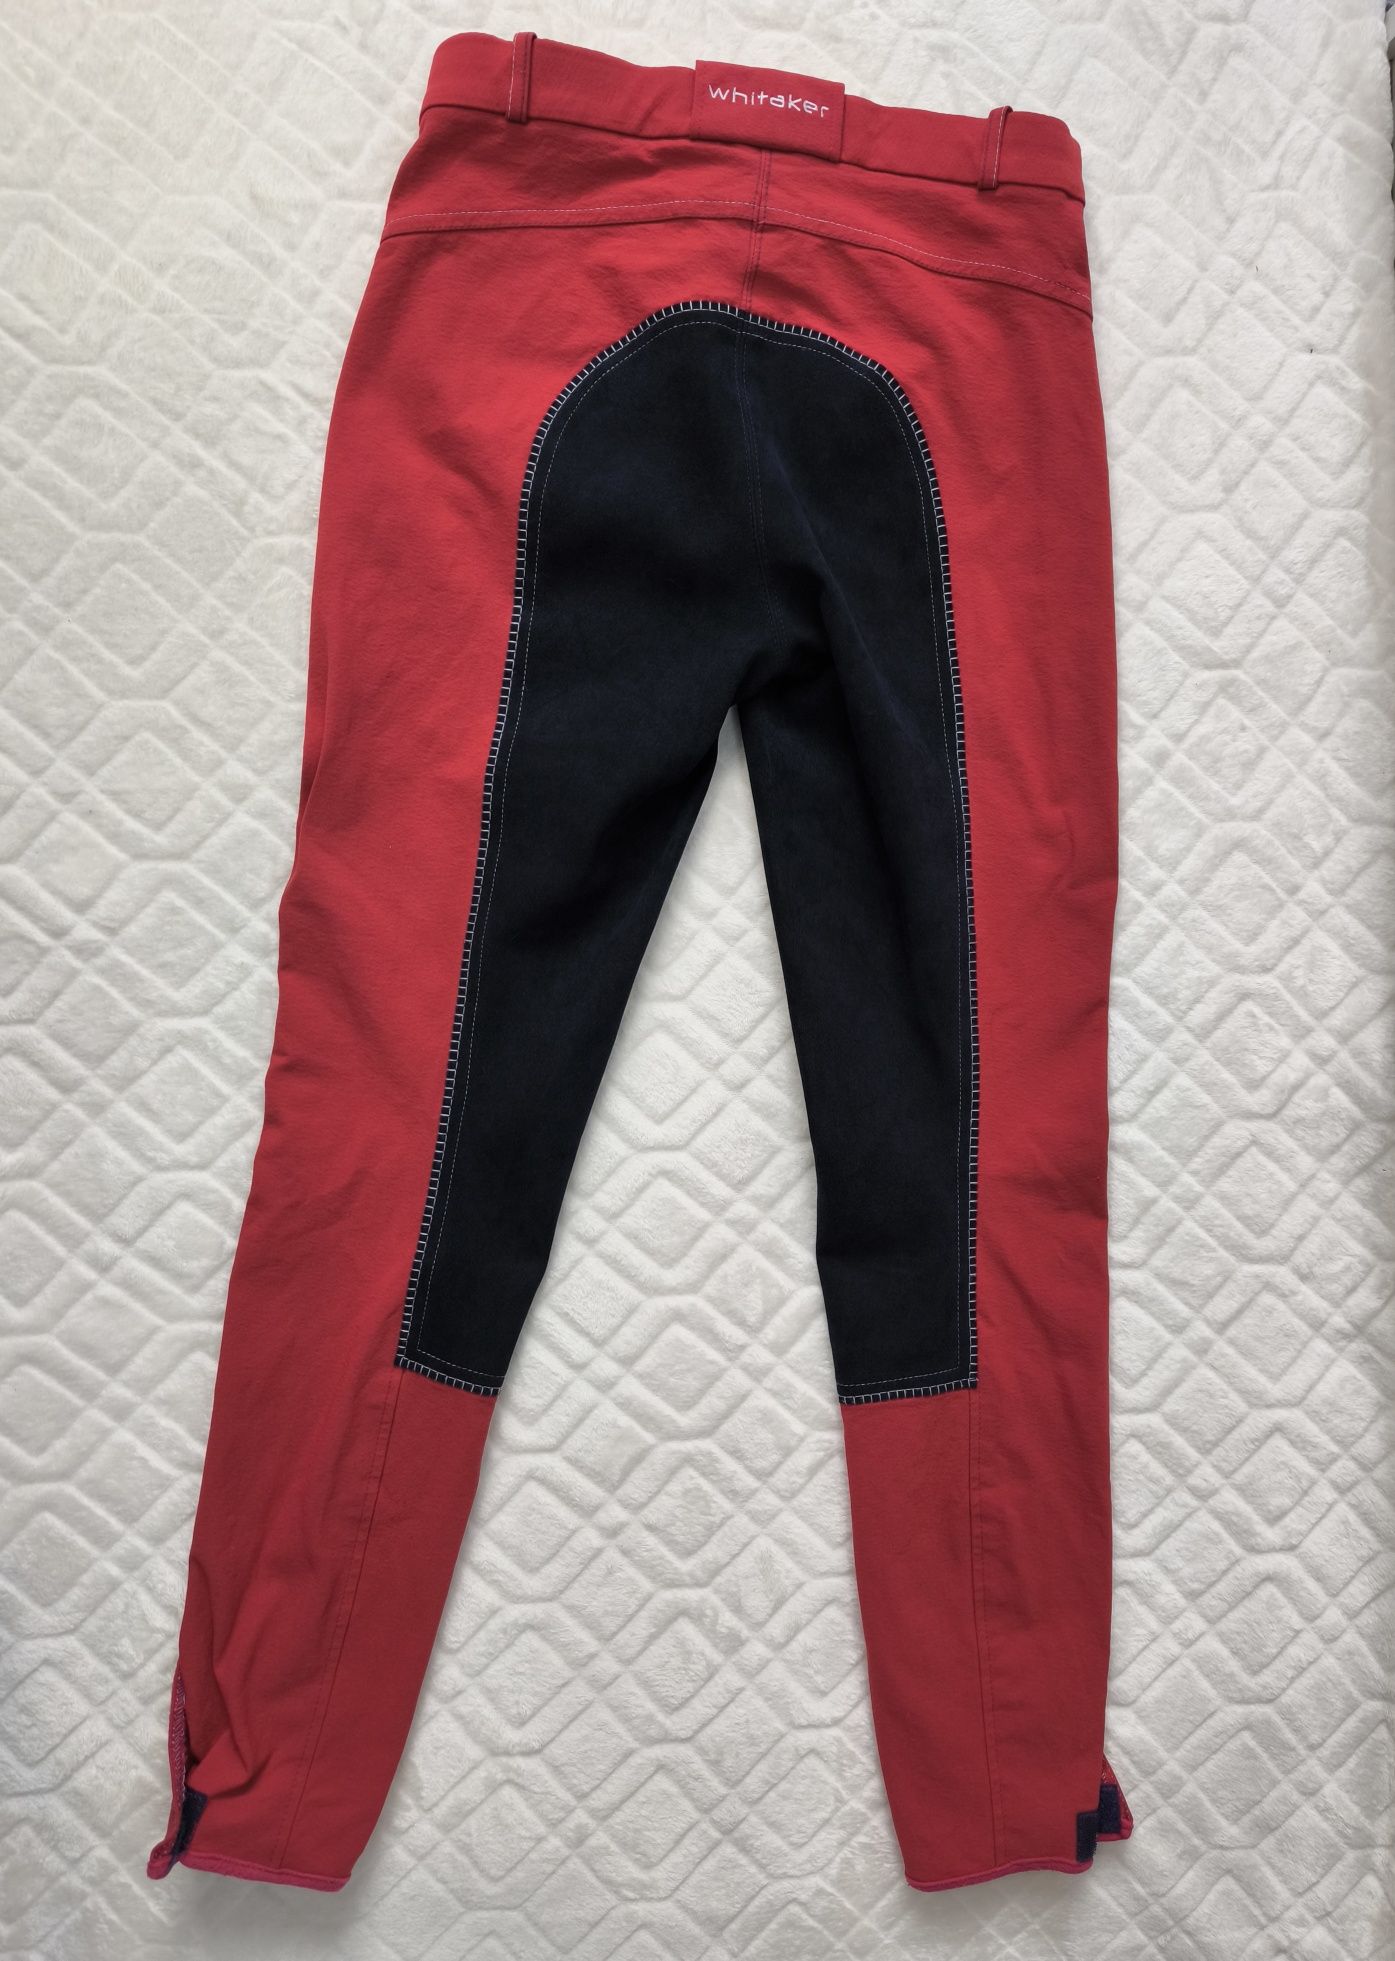 Damskie bryczesy czerwone damskie spodnie do jazdy konnej